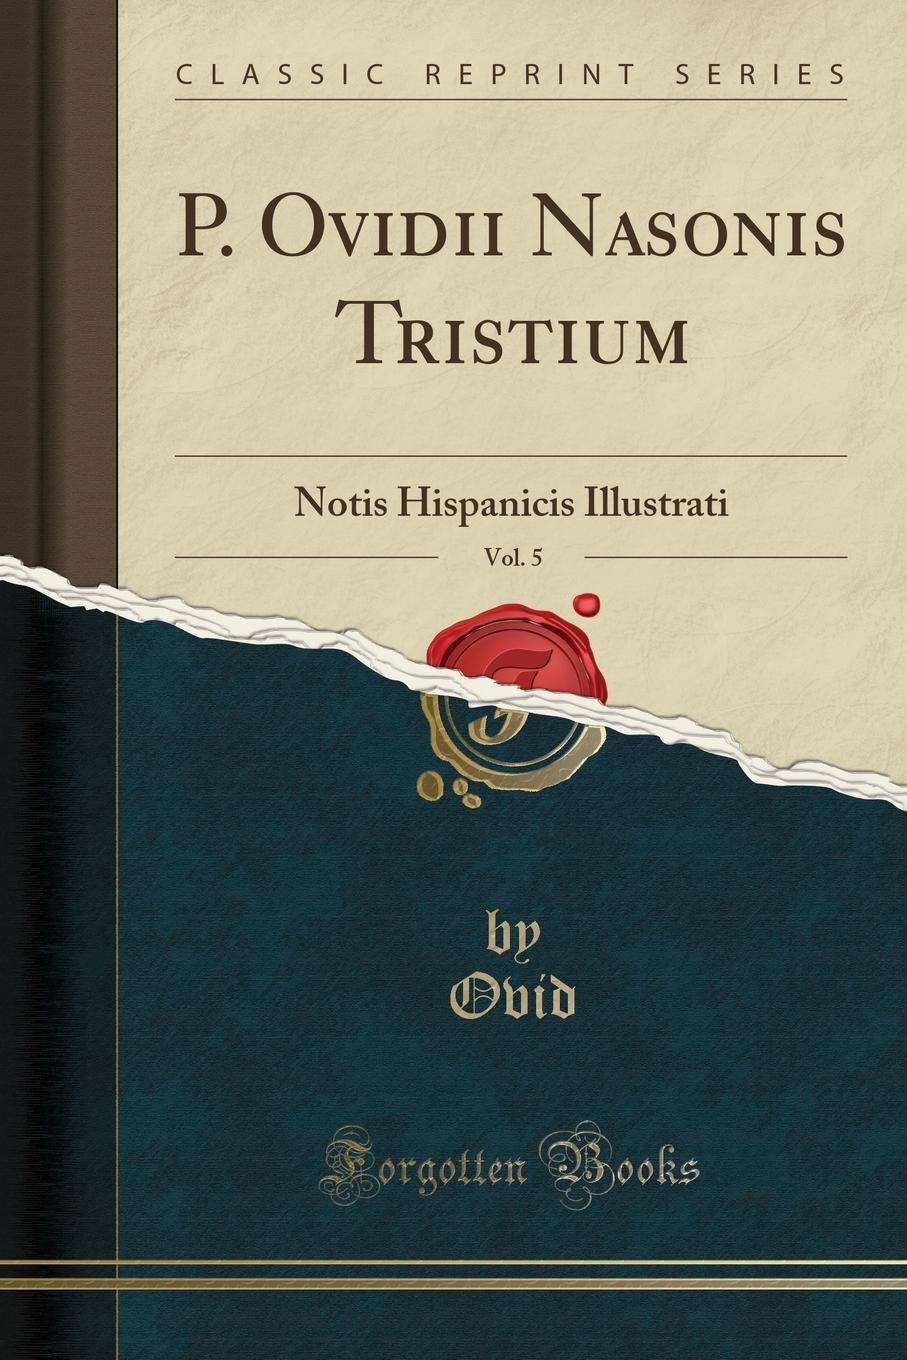 P. Ovidii Nasonis Tristium, Vol. 5. Notis Hispanicis Illustrati (Classic Reprint)